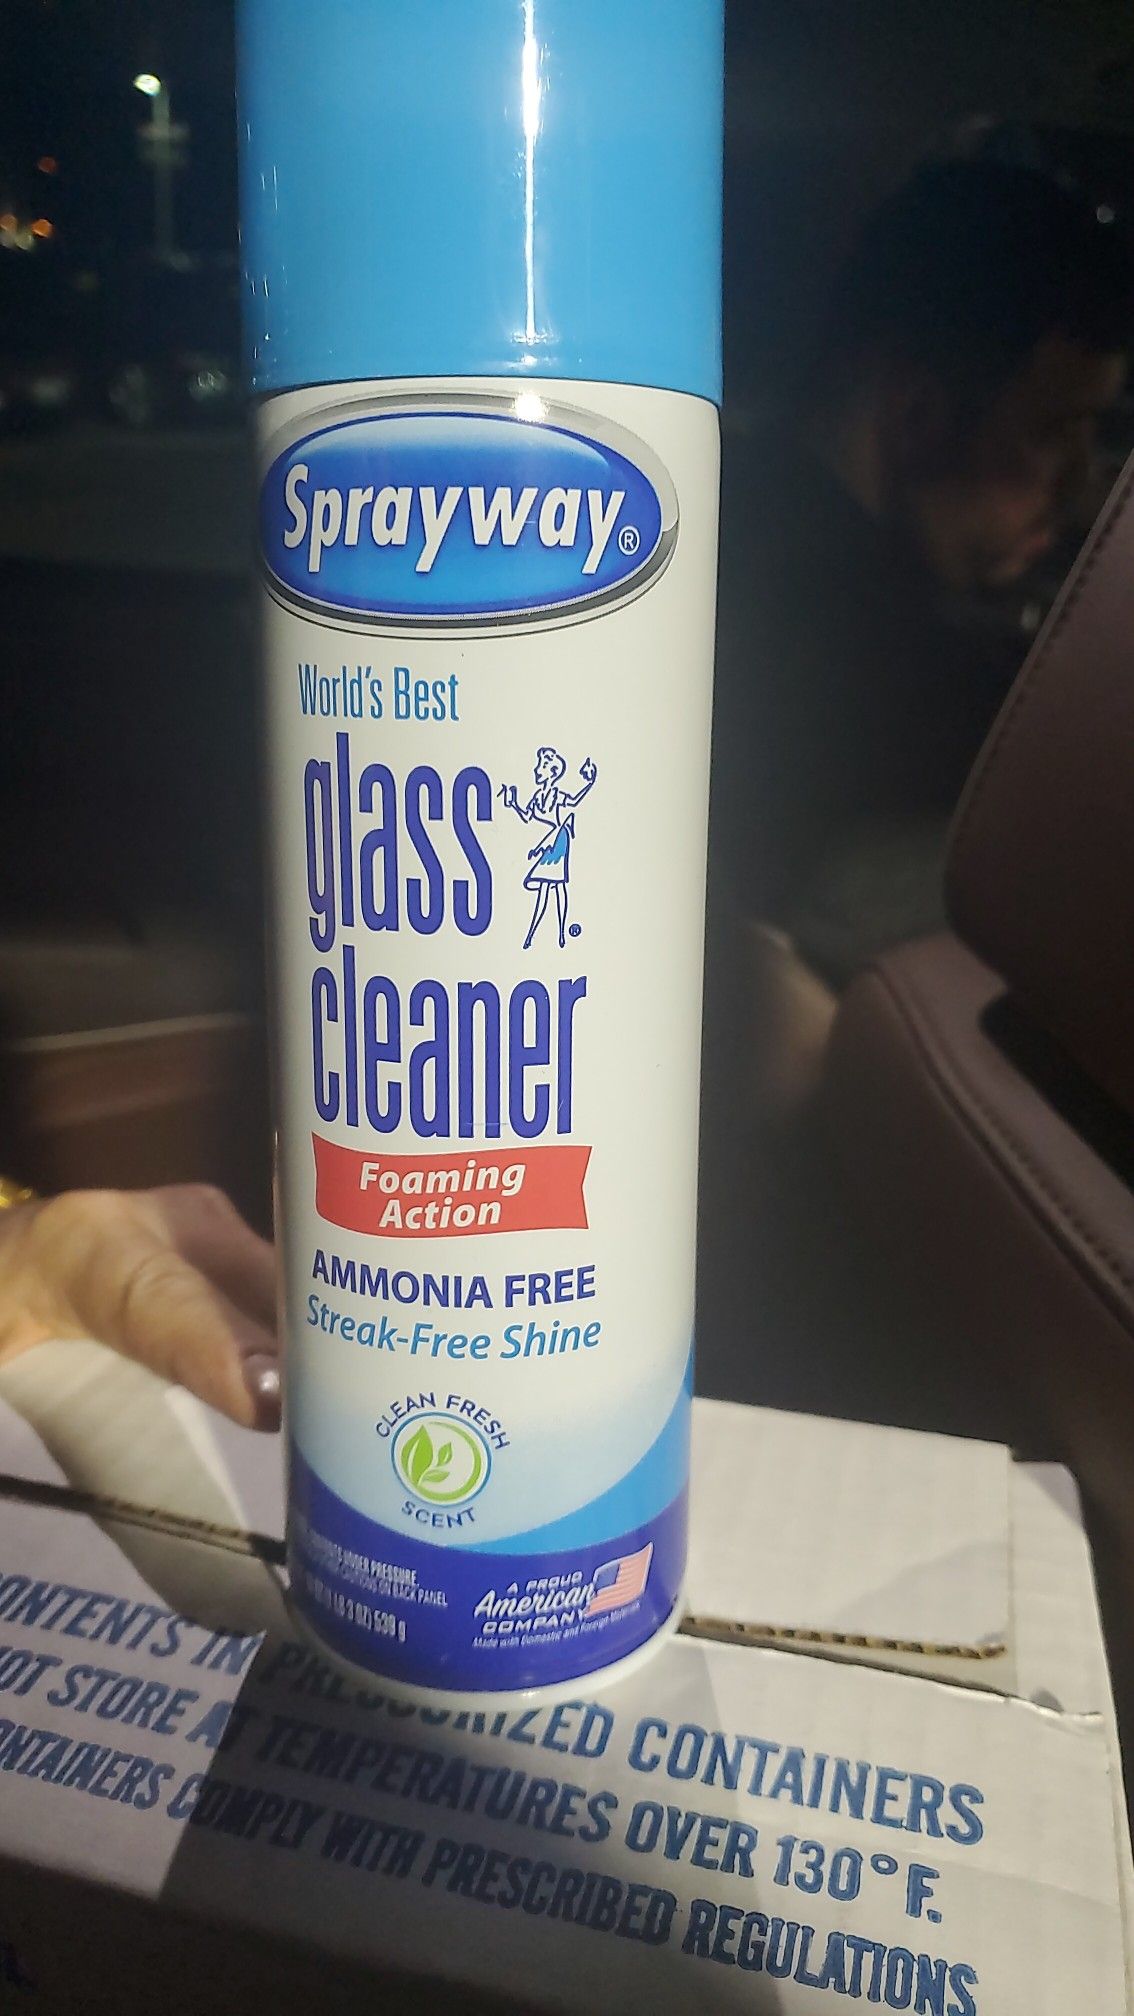 Sprayway world's best glass cleaner